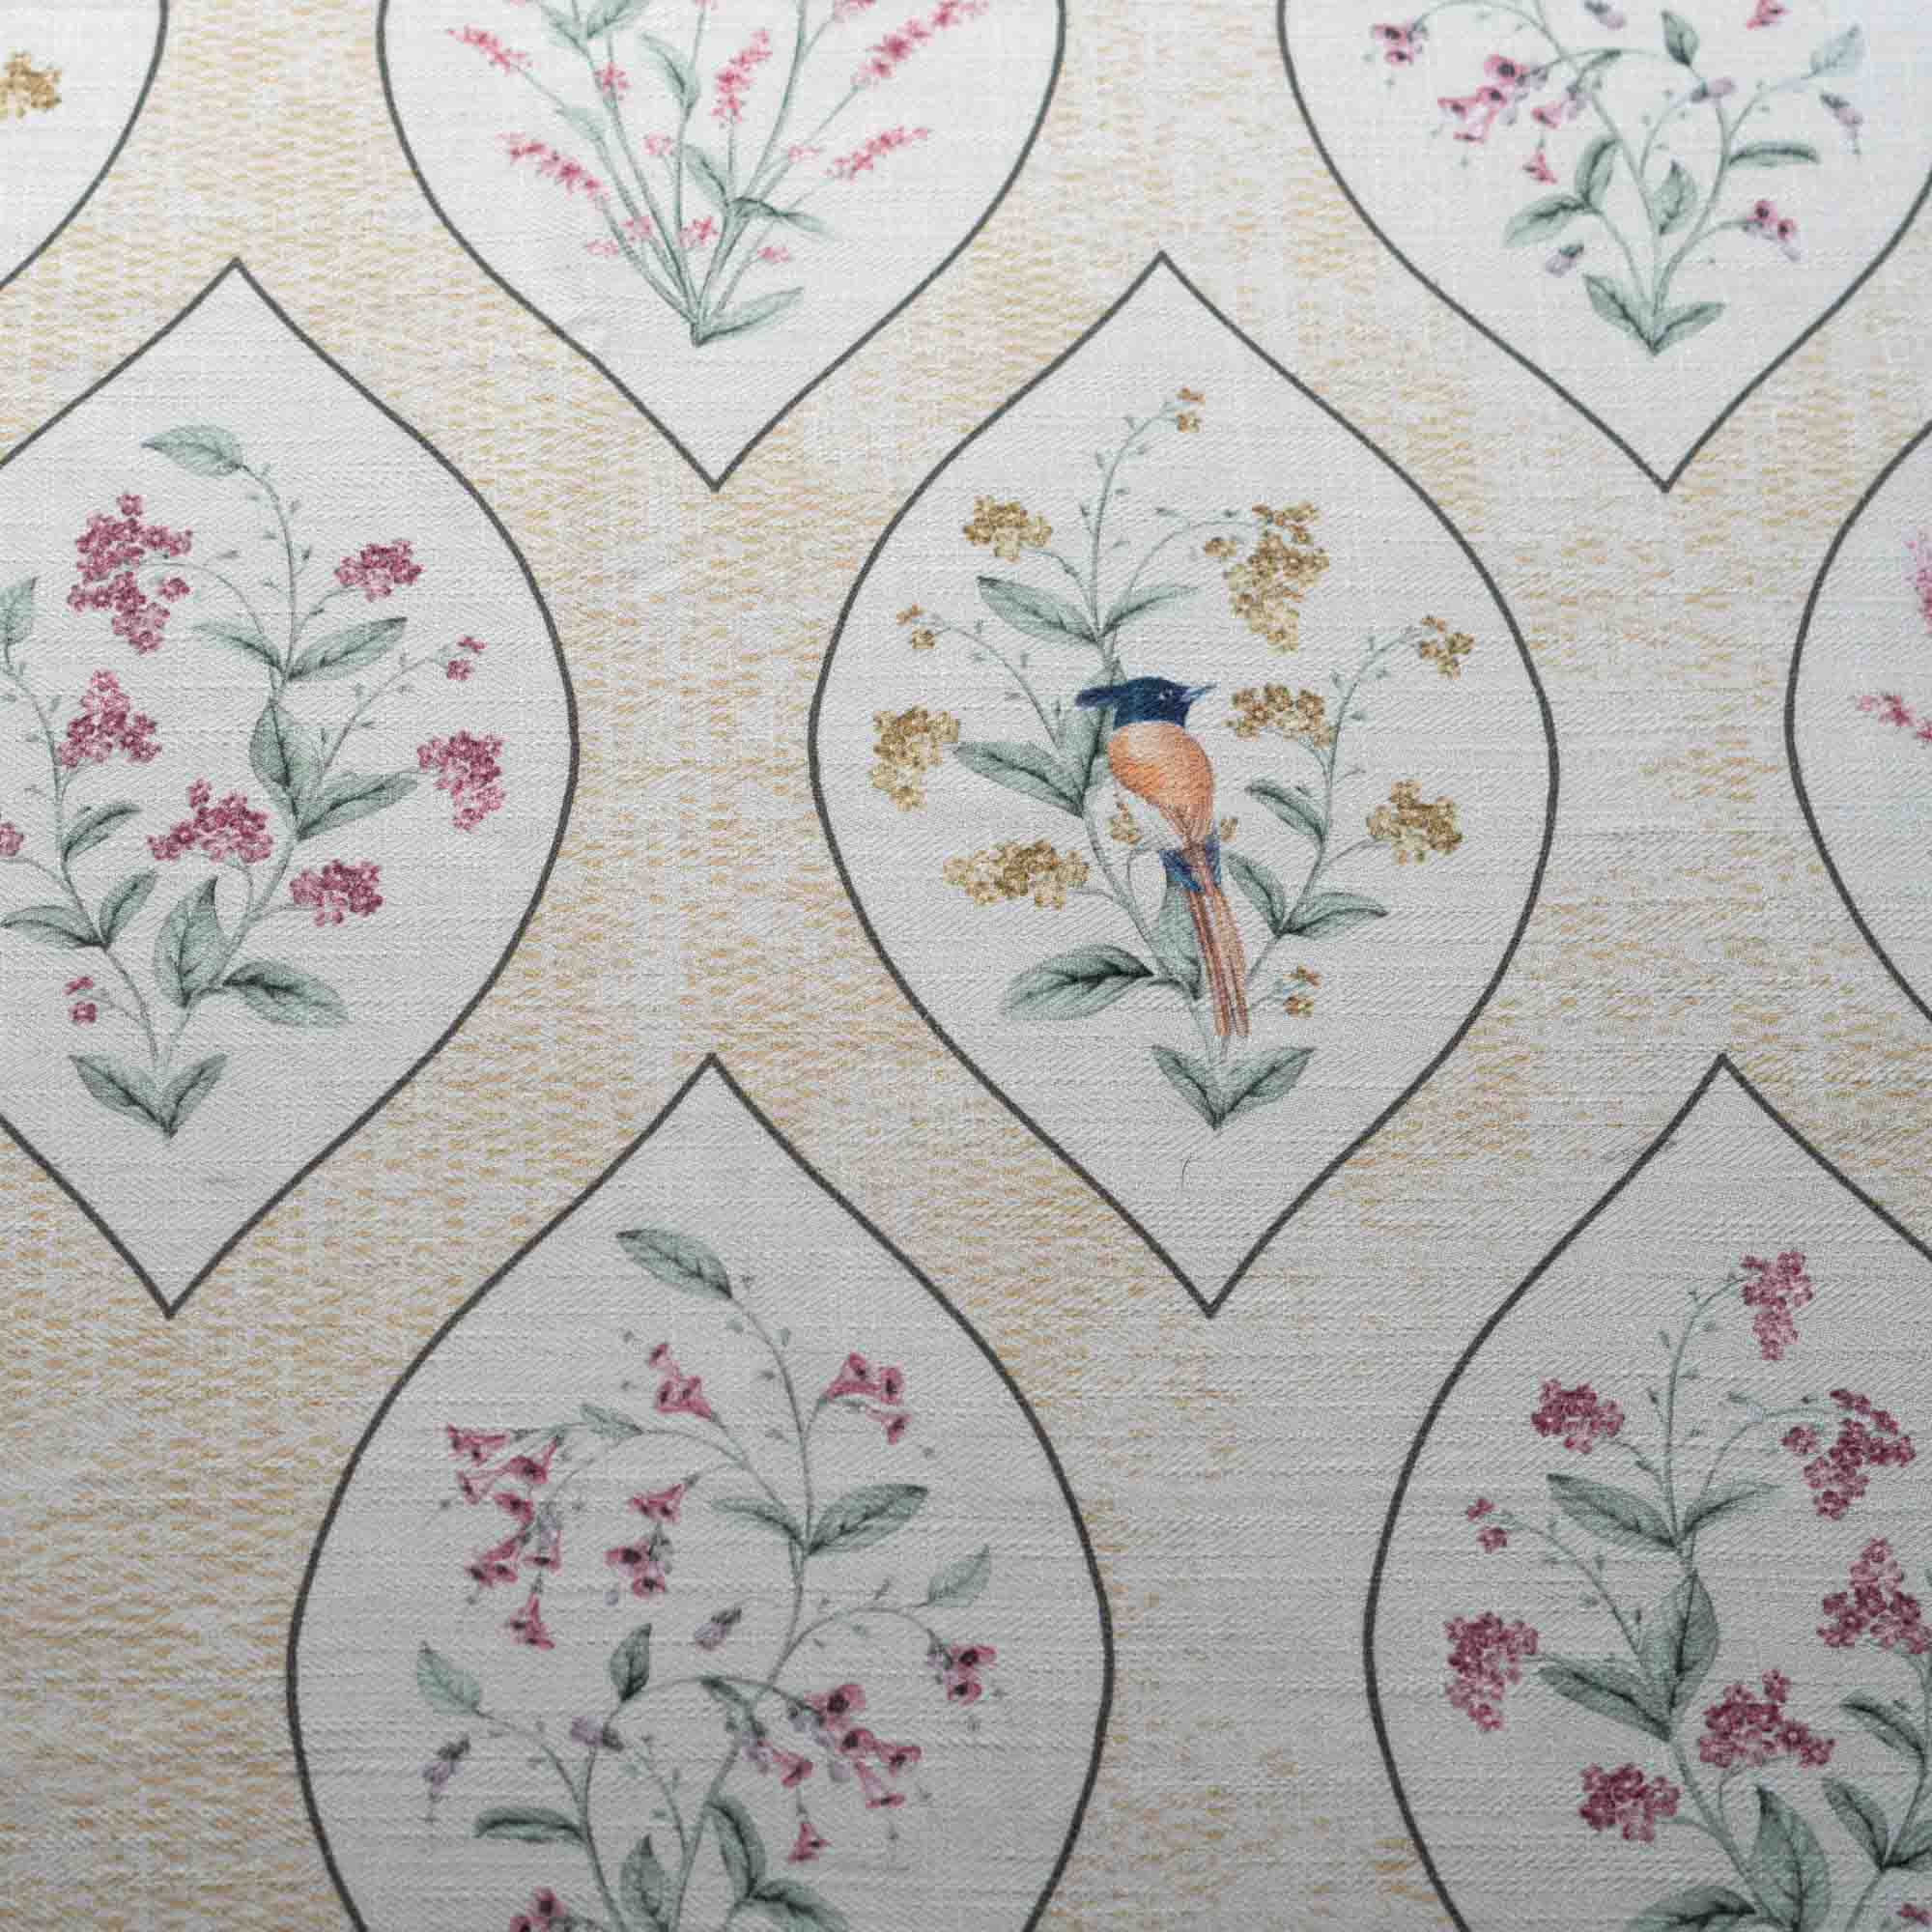 A Persian Corridor Spring Cotton Linen Blend Fabric